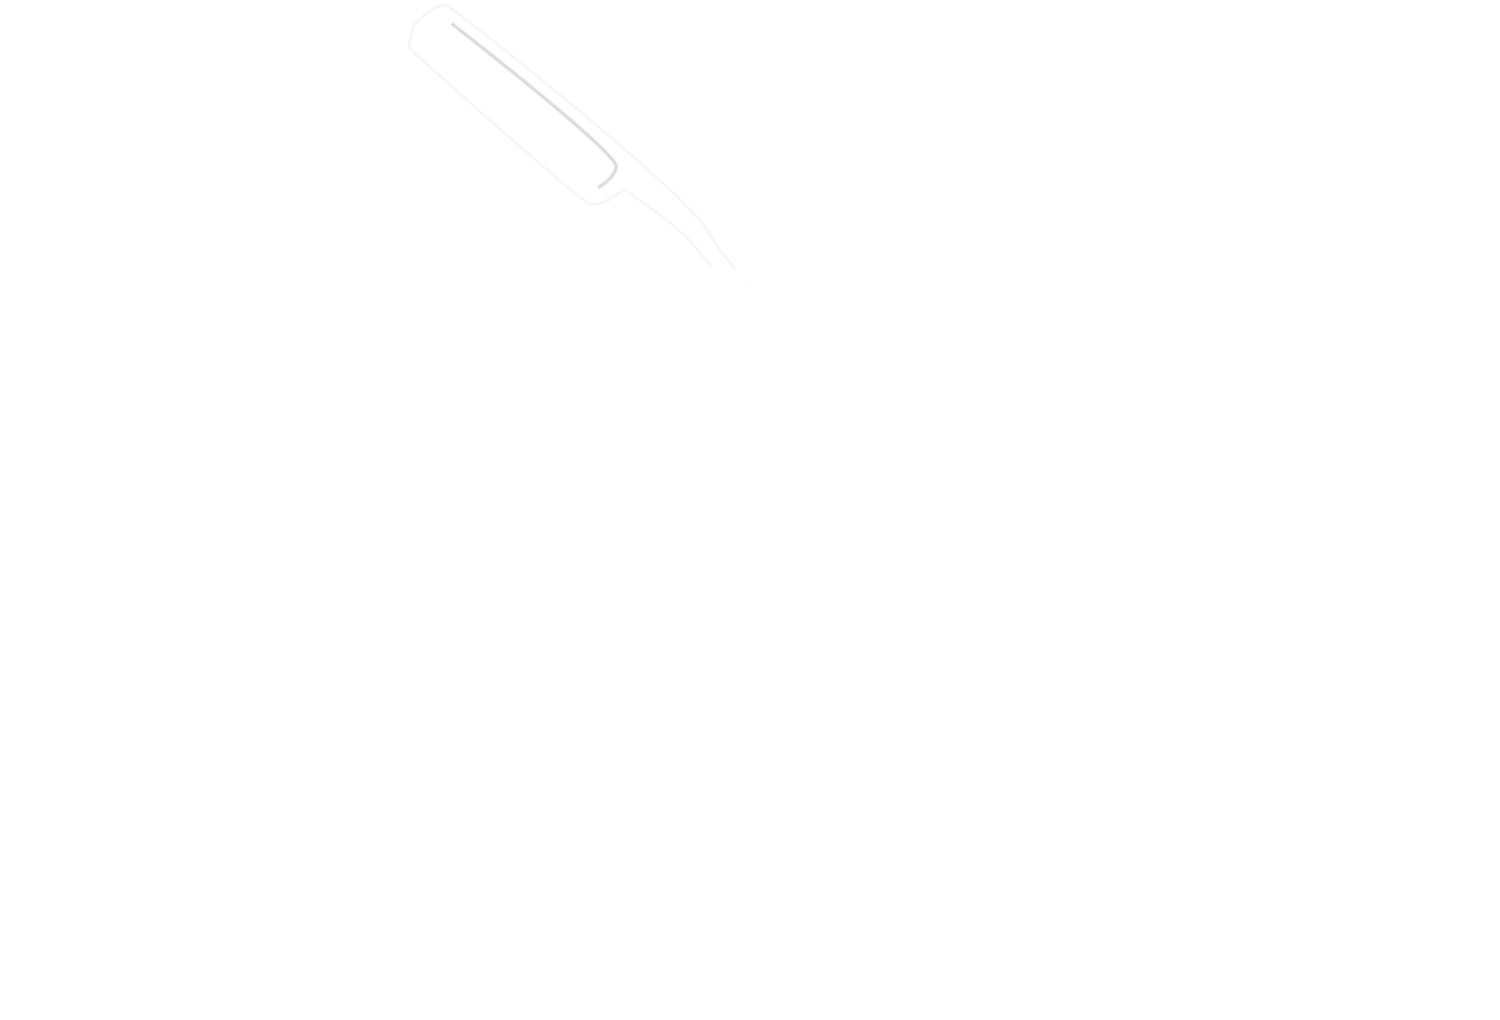 Str8 Edge Barber Shop